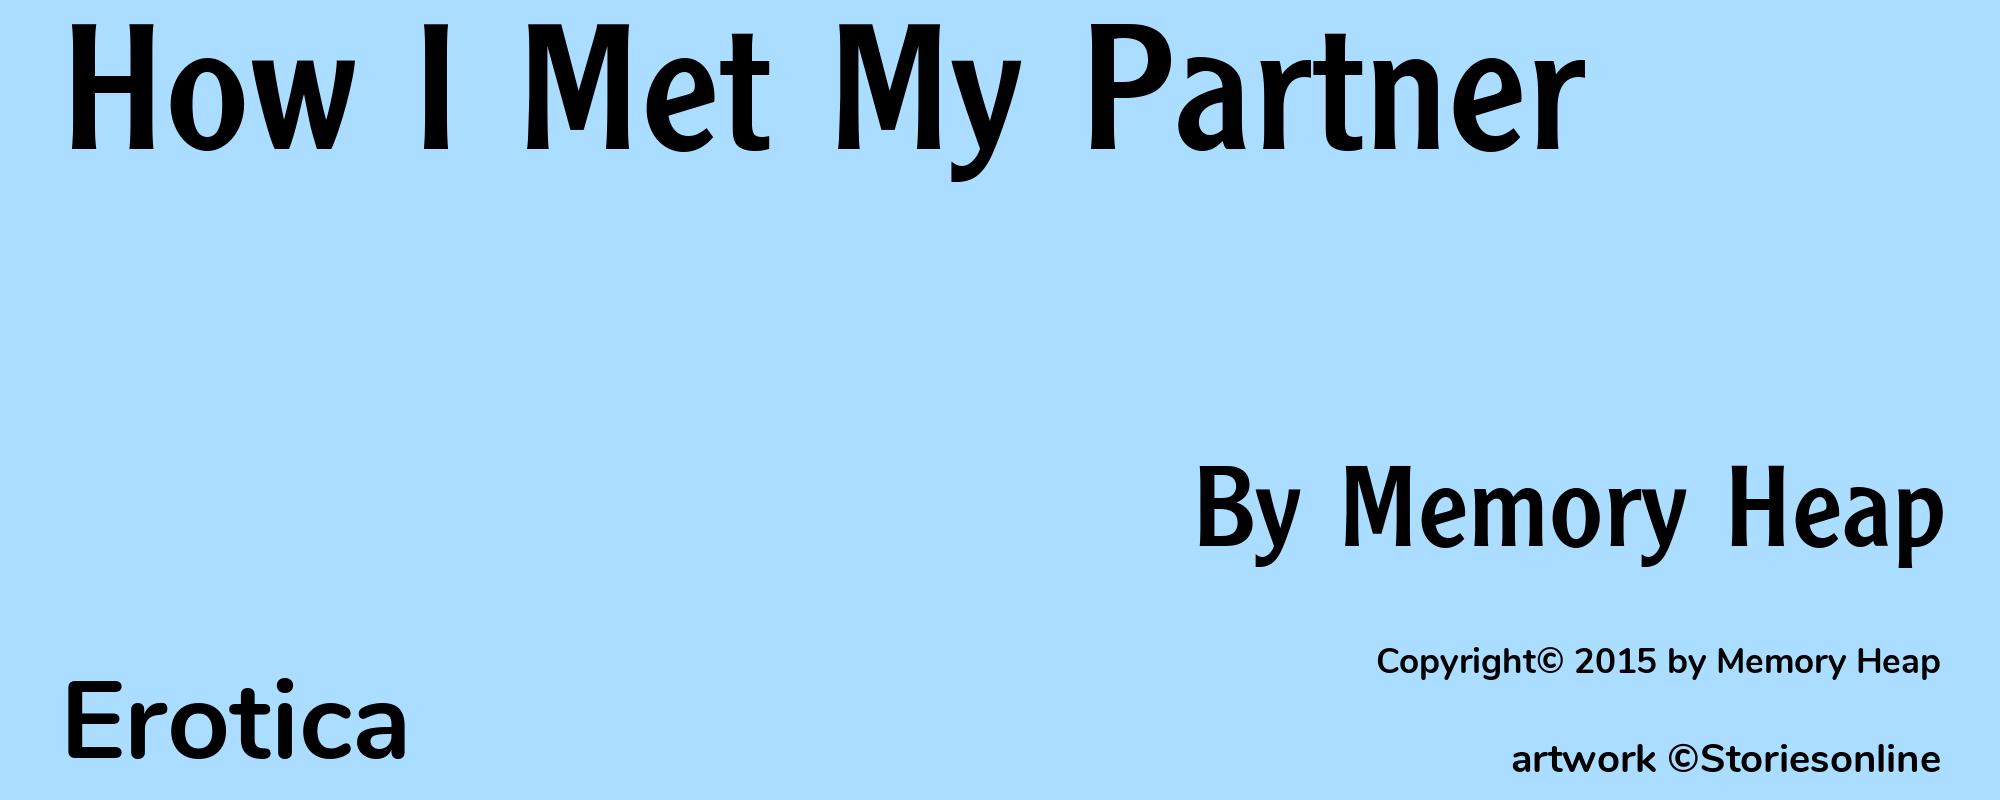 How I Met My Partner - Cover